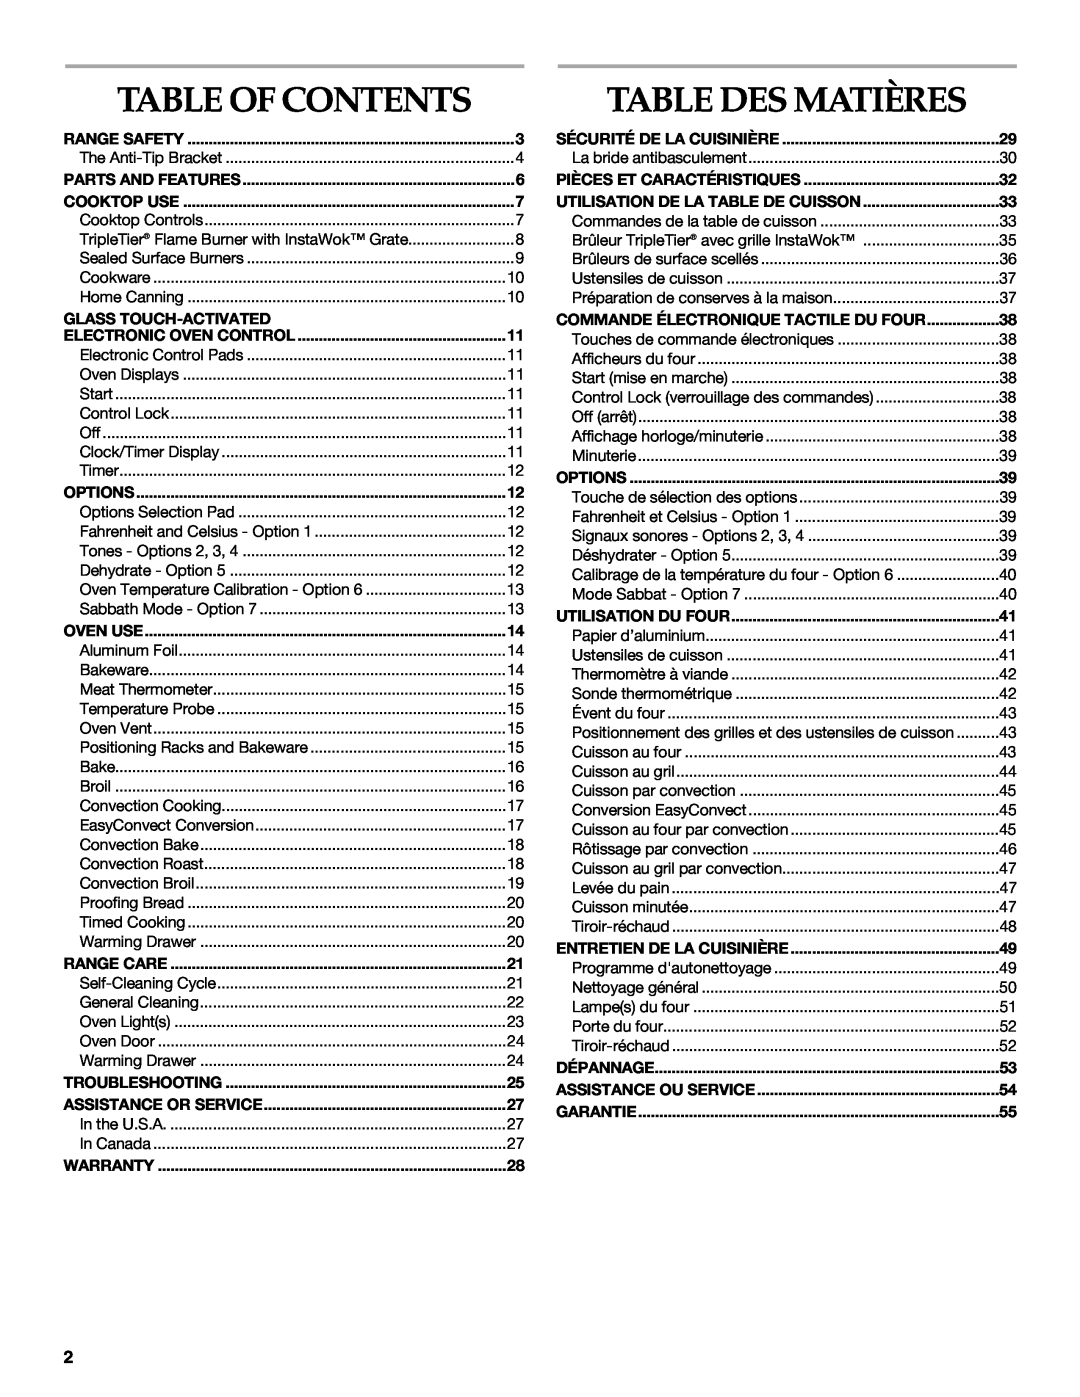 KitchenAid KDRS807 manual Table Des Matières, Table Of Contents 